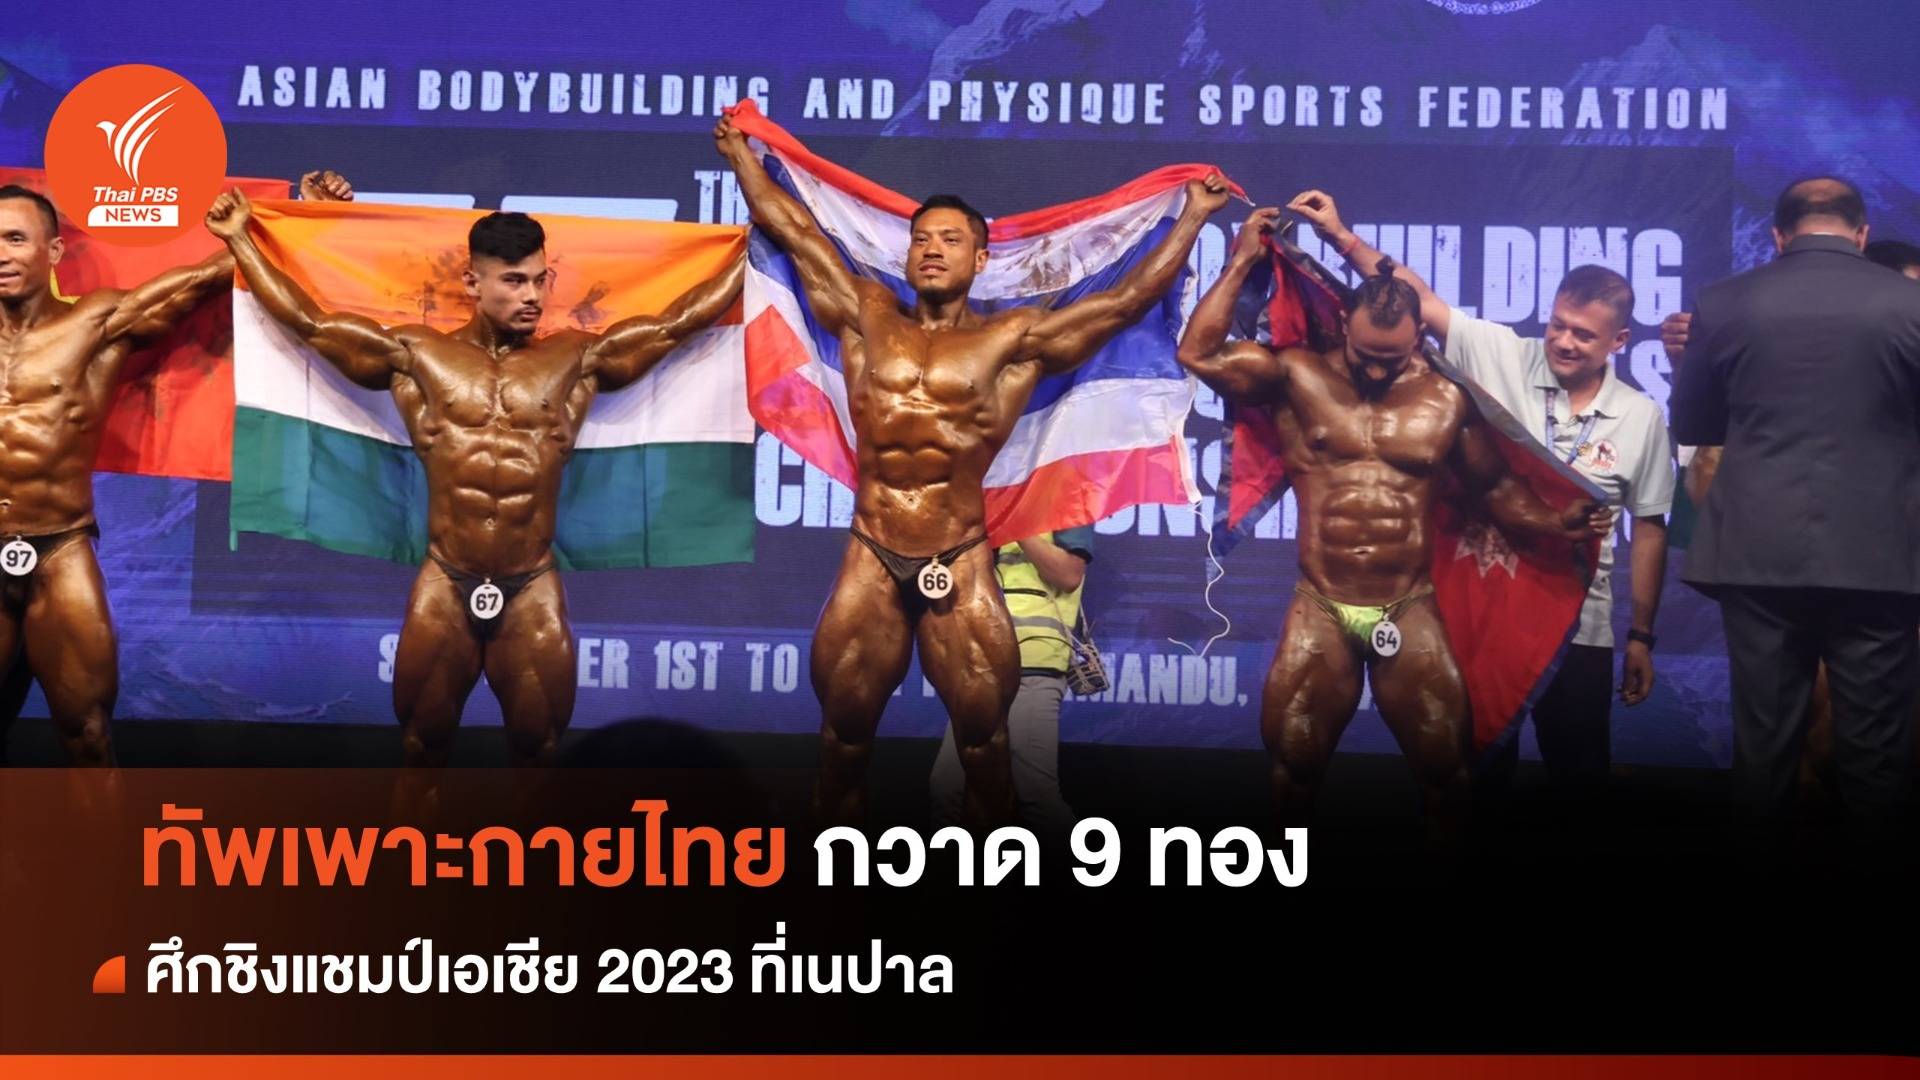 ทัพเพาะกายไทย กวาดเพิ่ม 9 ทอง ศึกชิงแชมป์เอเชีย 2023 ที่เนปาล